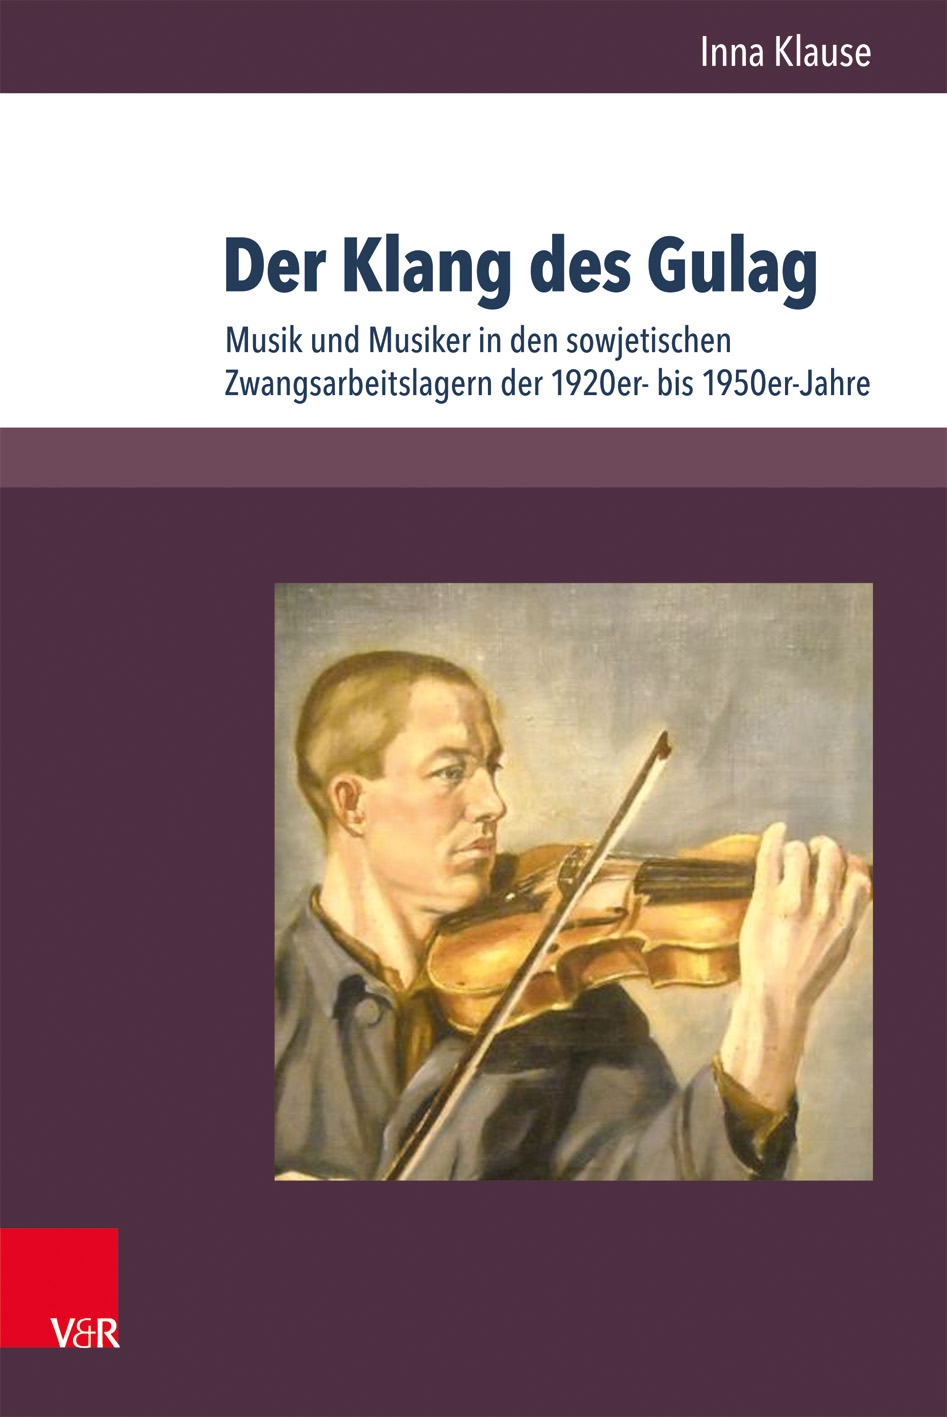 Inna Klause / Der Klang des Gulag - Inna Klause